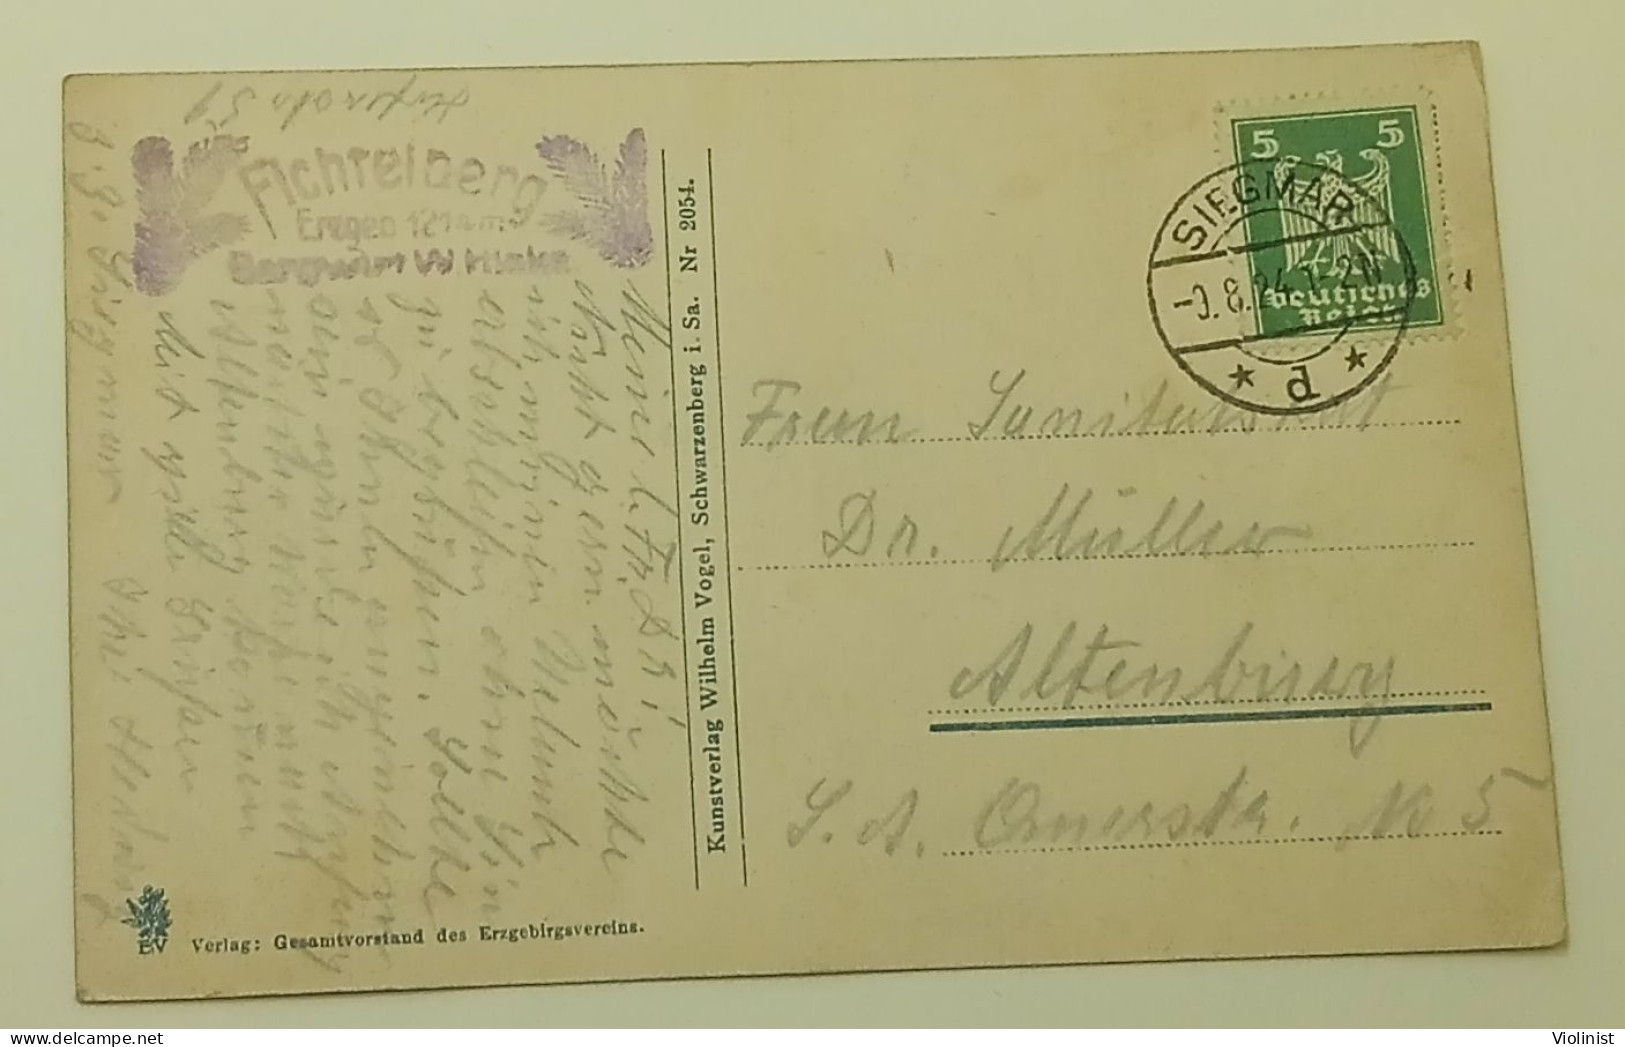 Germany-Fichtelberg i.Erzgeb.-postmark SIEGMAR 1924.